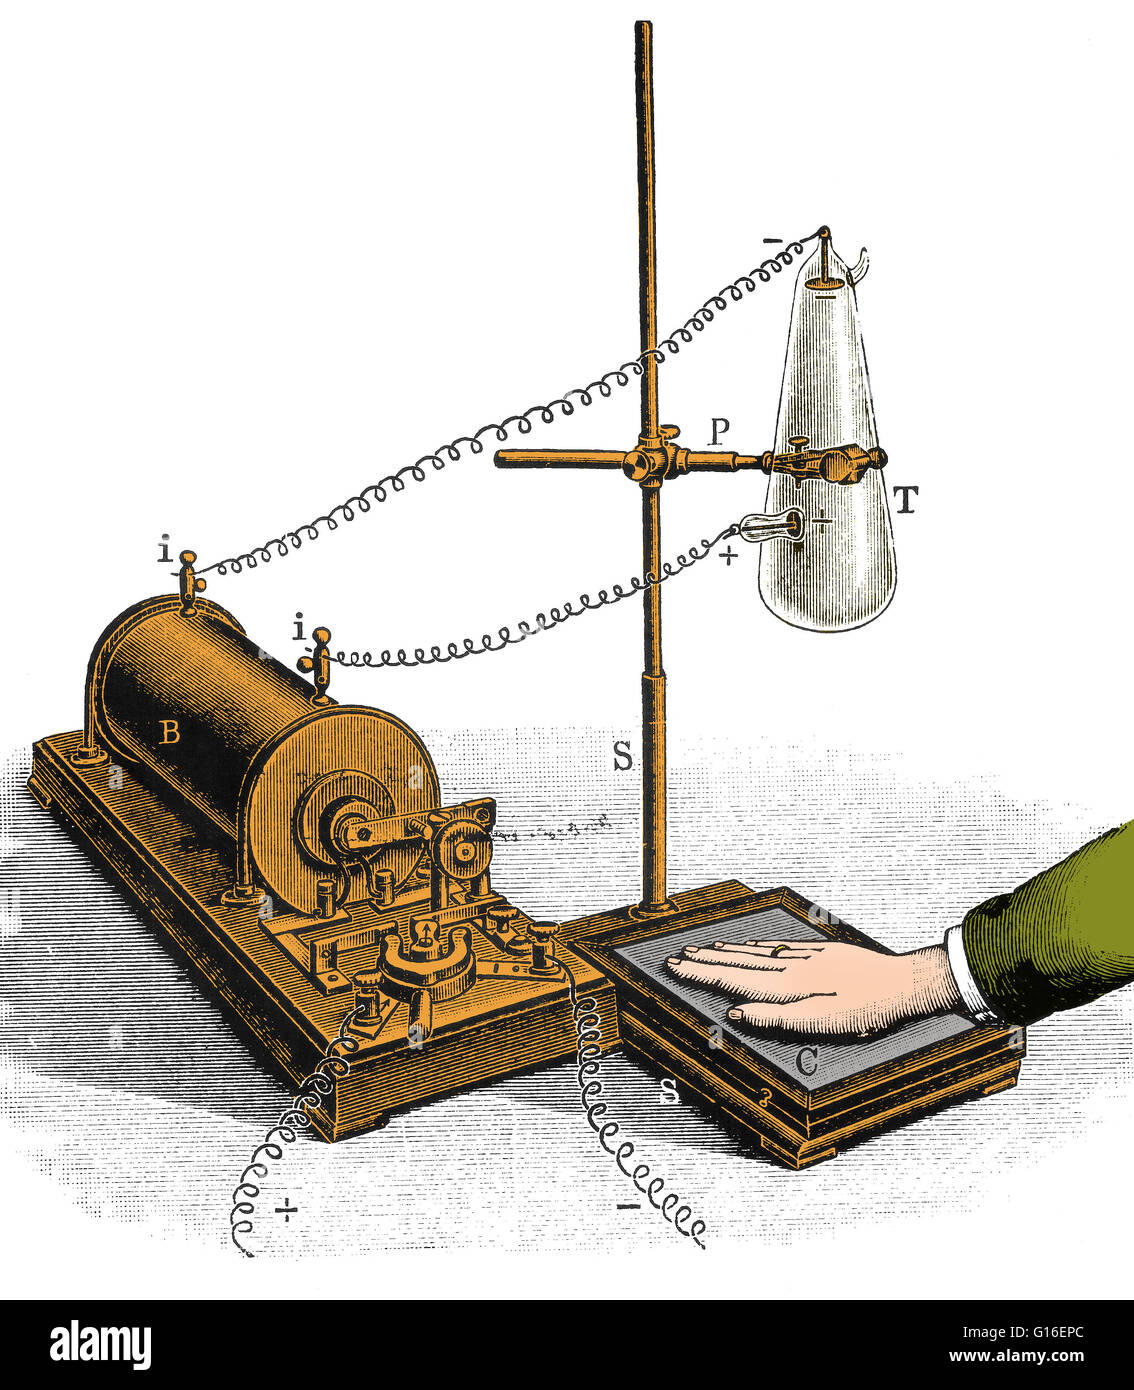 Wilhelm Conrad Röntgen (1845-1923), deutscher Experimentalphysiker und Entdecker der Röntgenstrahlen. Bei der Verwendung einer Entladungsröhre (in dem eine elektrische Entladung durch ein Gas mit niedrigem Druck übergeben wird) in einem abgedunkelten Raum, festgestellt Röntgen, dass eine Karte mit beschichtet Stockfoto